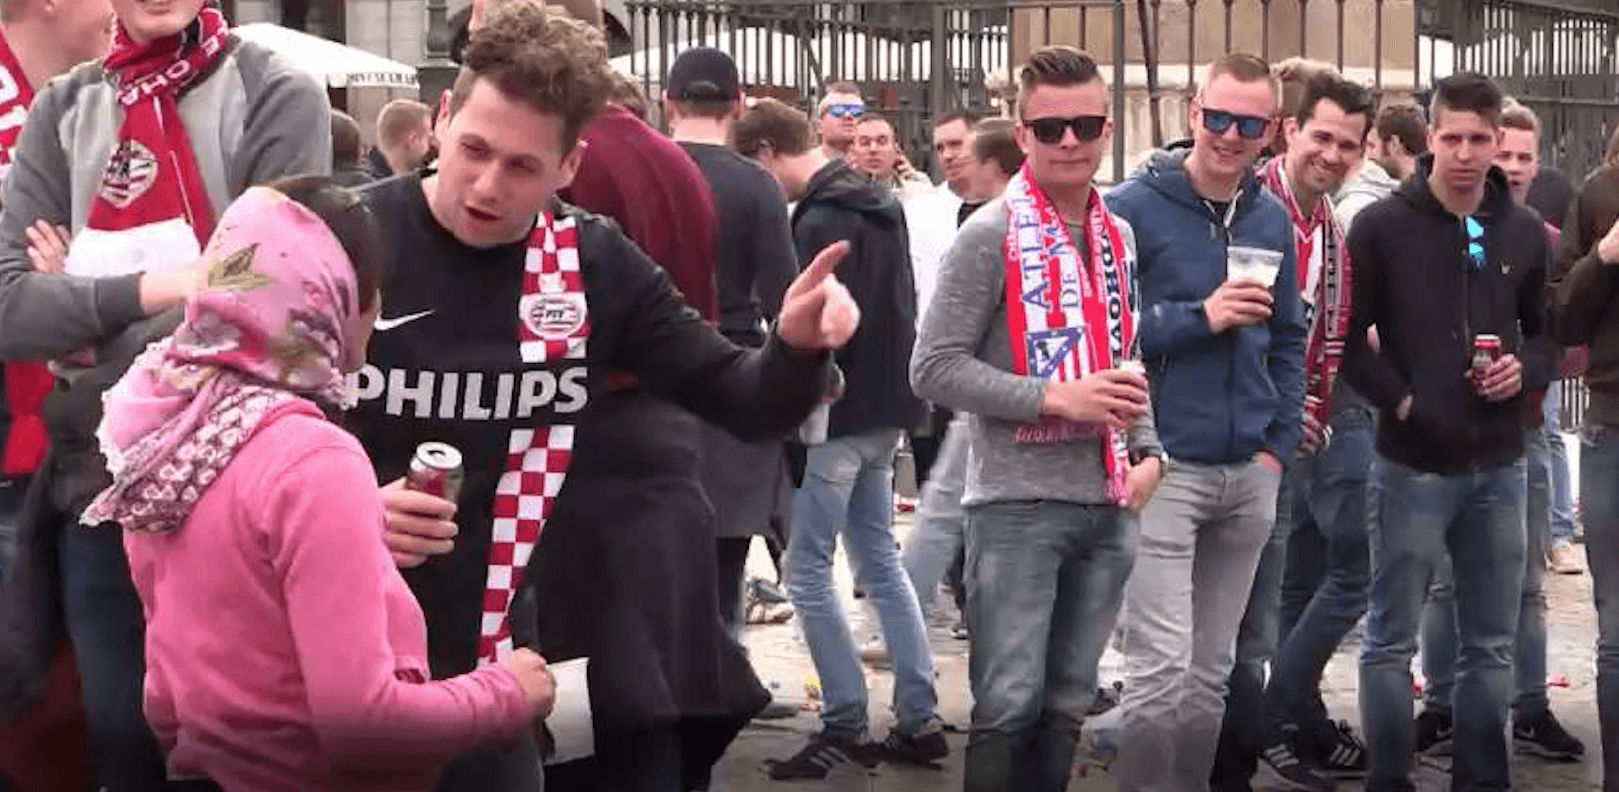 Het geval van de Nederlandse fans wanneer de massa het kwade verhoogt / psychologie